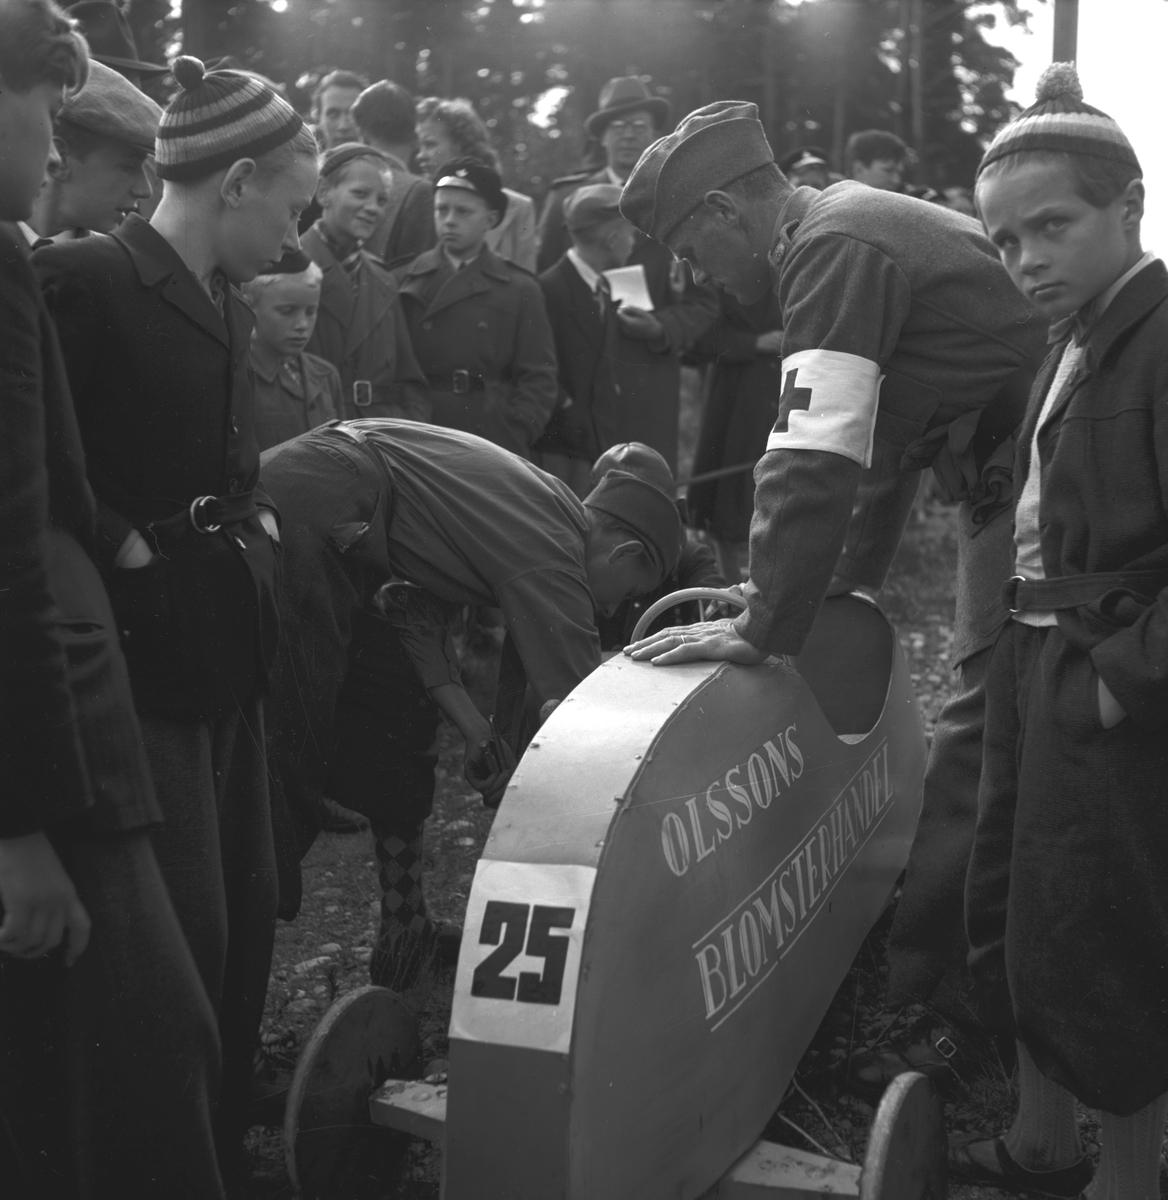 KFUM:s Pojkracertävling. September 1944. Bil nr 25 Olssons Blomsterhandel

